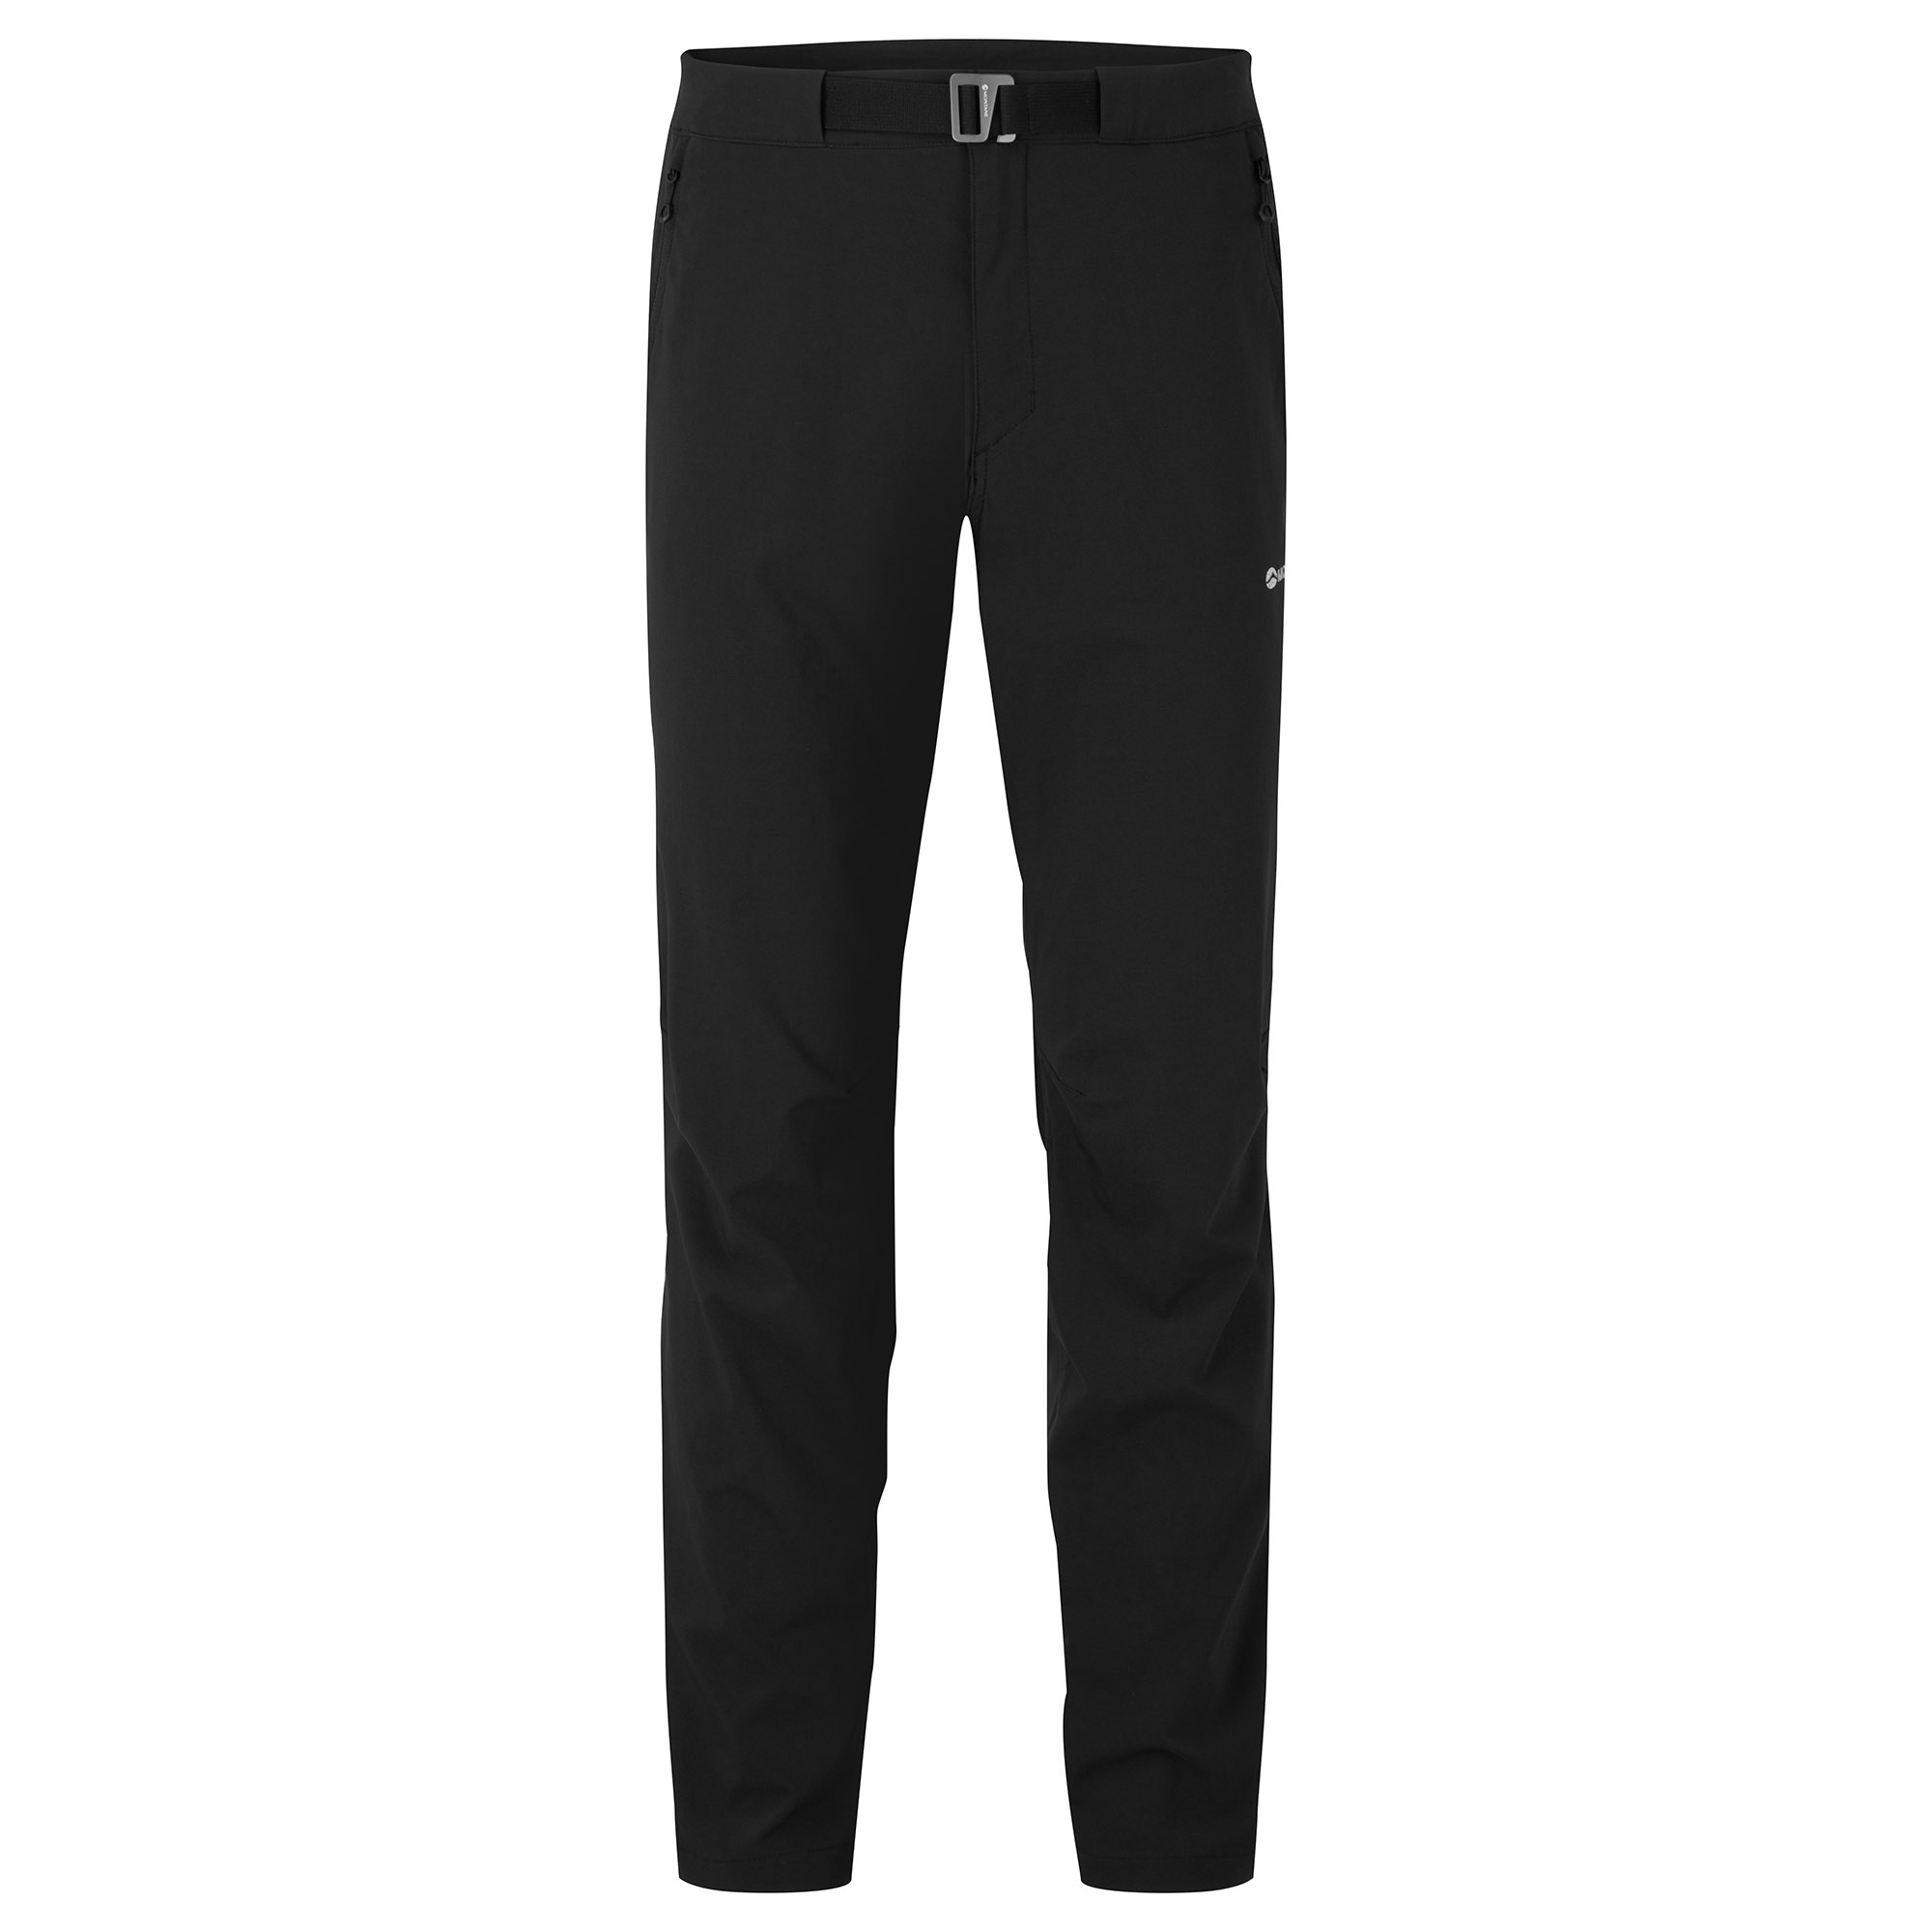 Montane pánské softshellové kalhoty Tenacity Lite Pants - Prodloužené Nohavice Barva: black, Velikost: 38